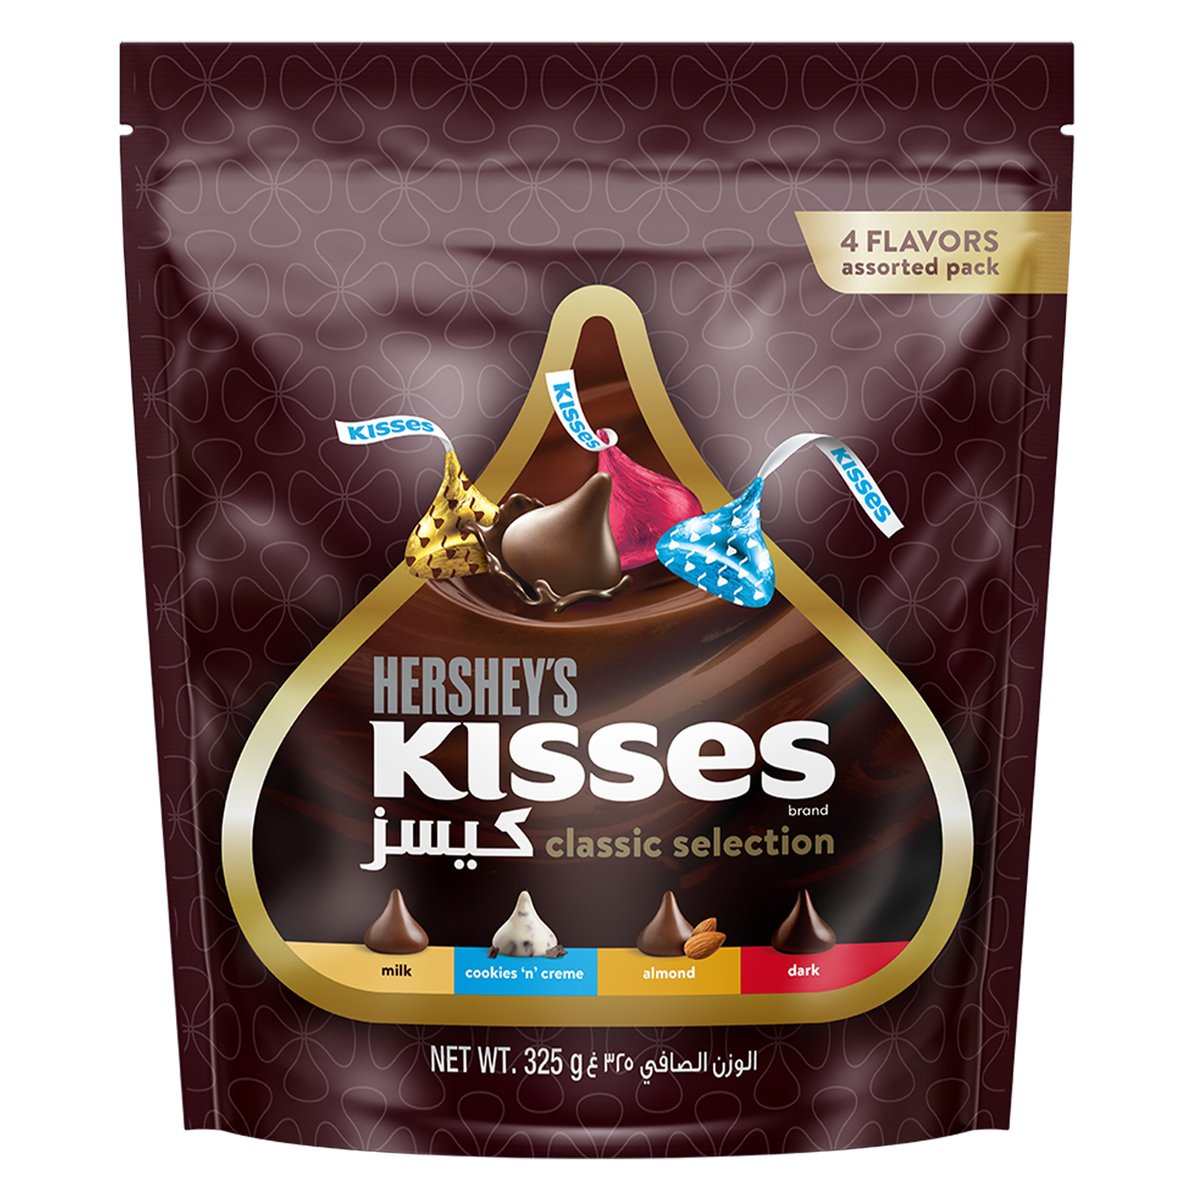 اشتري قم بشراء هيرشي كيسز المجموعة الكلاسيكية 4 نكهات 325 جم Online at Best Price من الموقع - من لولو هايبر ماركت Chocolate Bags في السعودية